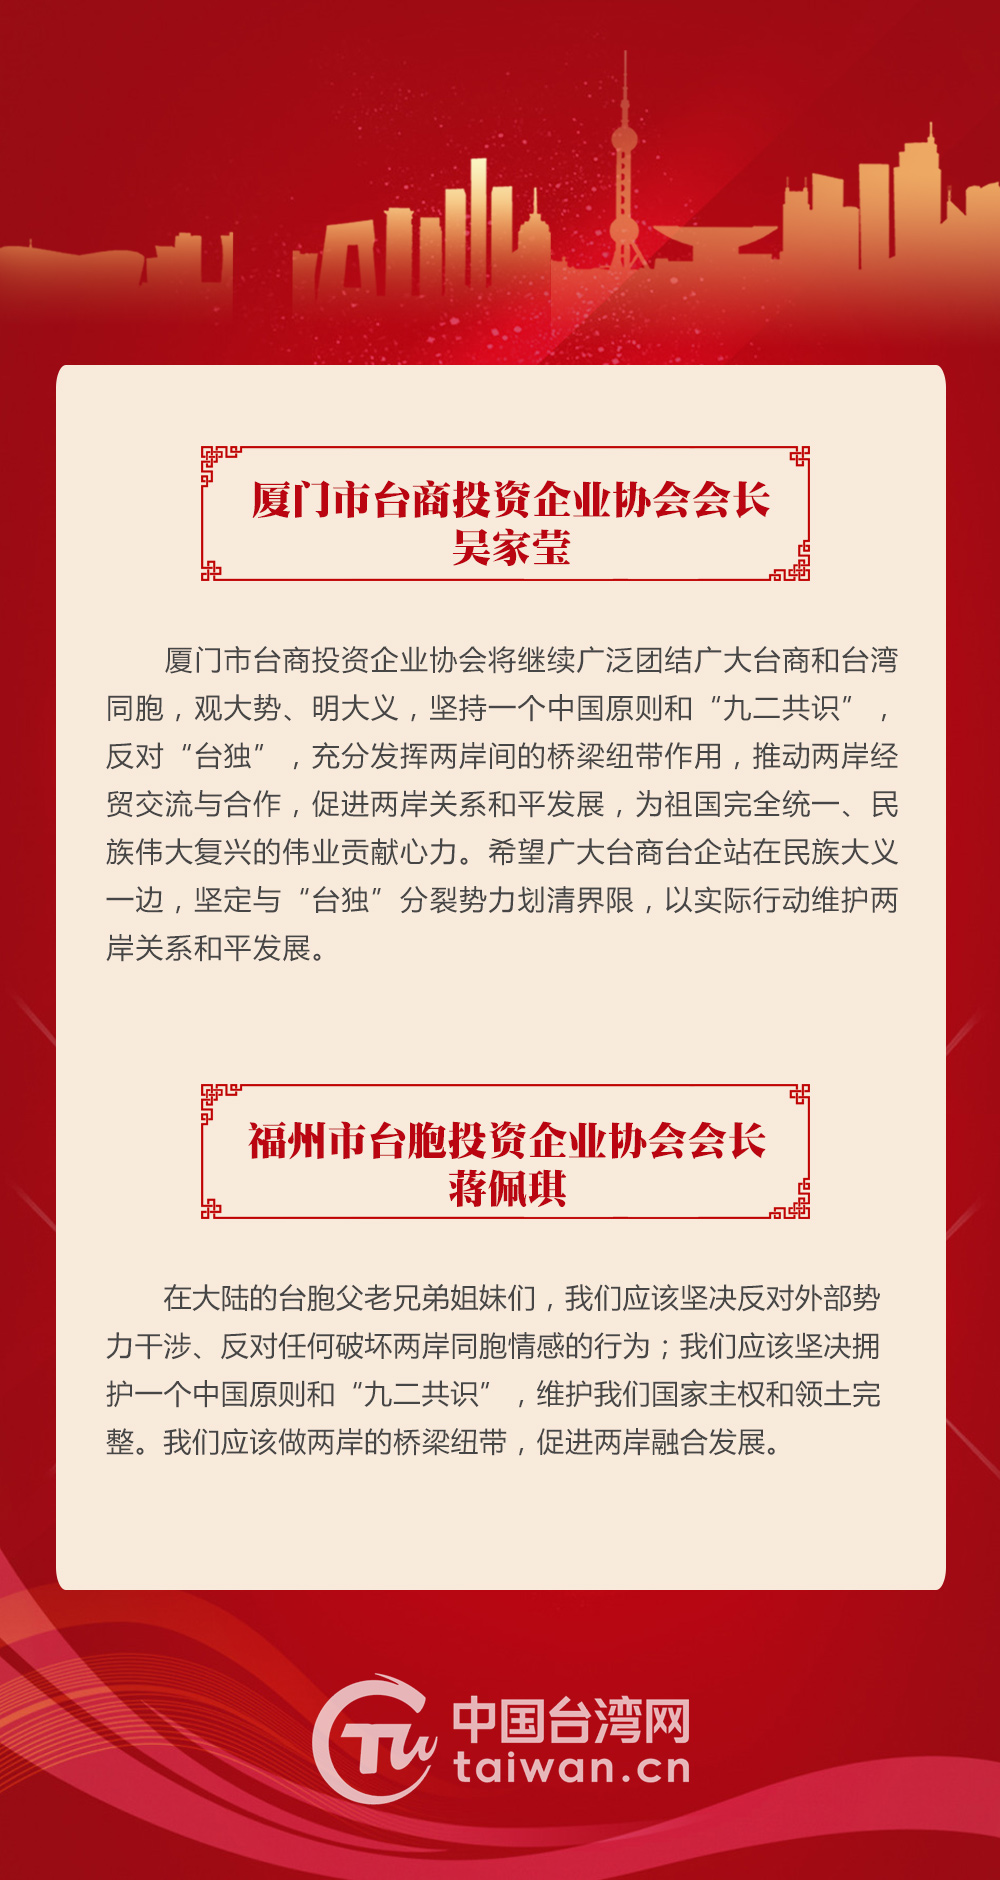 台胞热议《台湾问题与新时代中国统一事业》白皮书